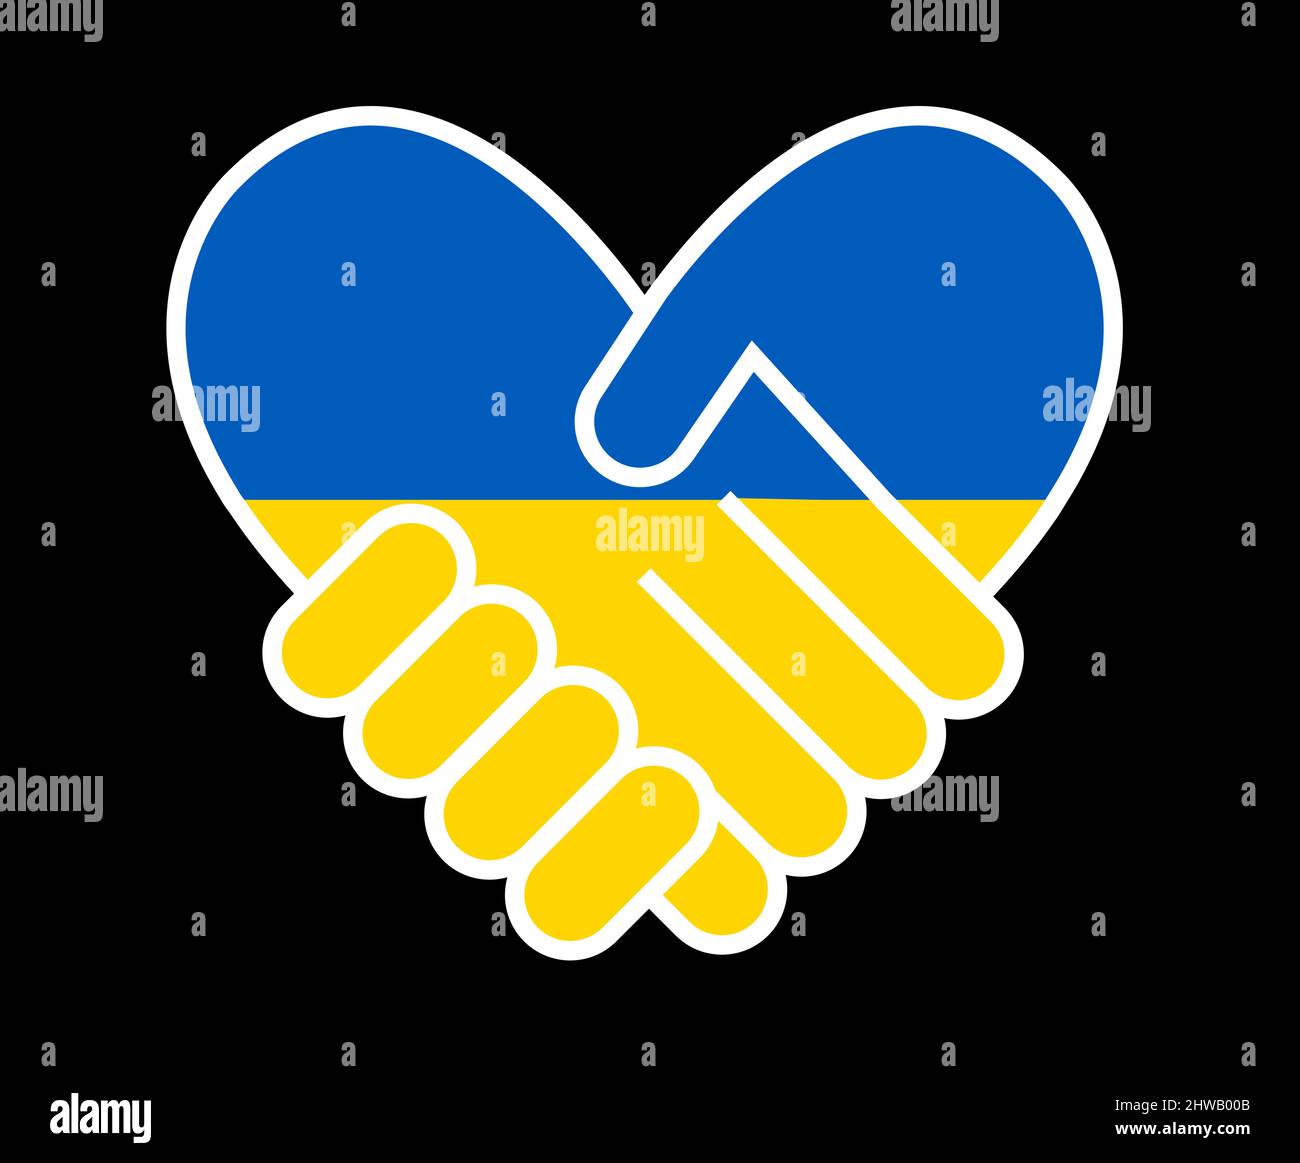 Illustration über die Unterstützung der Ukraine und Solidarität, Freundschaft Stock Vektor